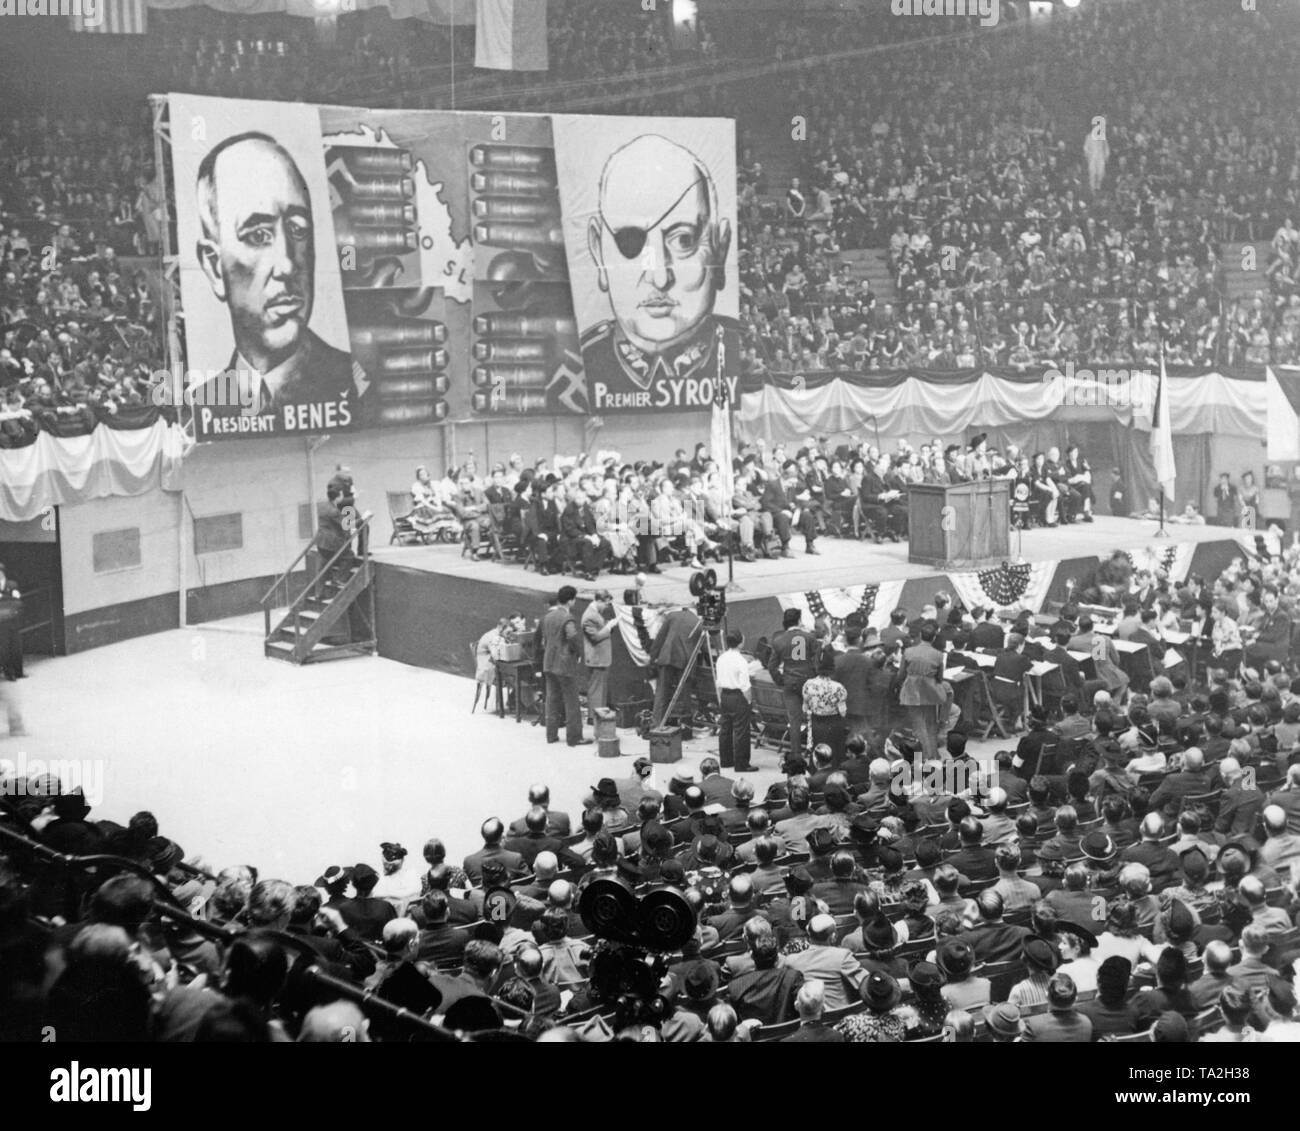 Der Ausschuss für das Heil der Tschechoslowakei trifft sich in der Madison Square Garden, New York. Unter anderem Thomas Mann und Dorothy Thompson Vorträge auf dem Kongress. Im Hintergrund, Plakate mit den Bildern von Präsident Benes und Premierminister Syrovy. Adolf Hitler provozierte Krise das Sudetenland das Sudetenland an das Deutsche Reich zu Anhang. Stockfoto